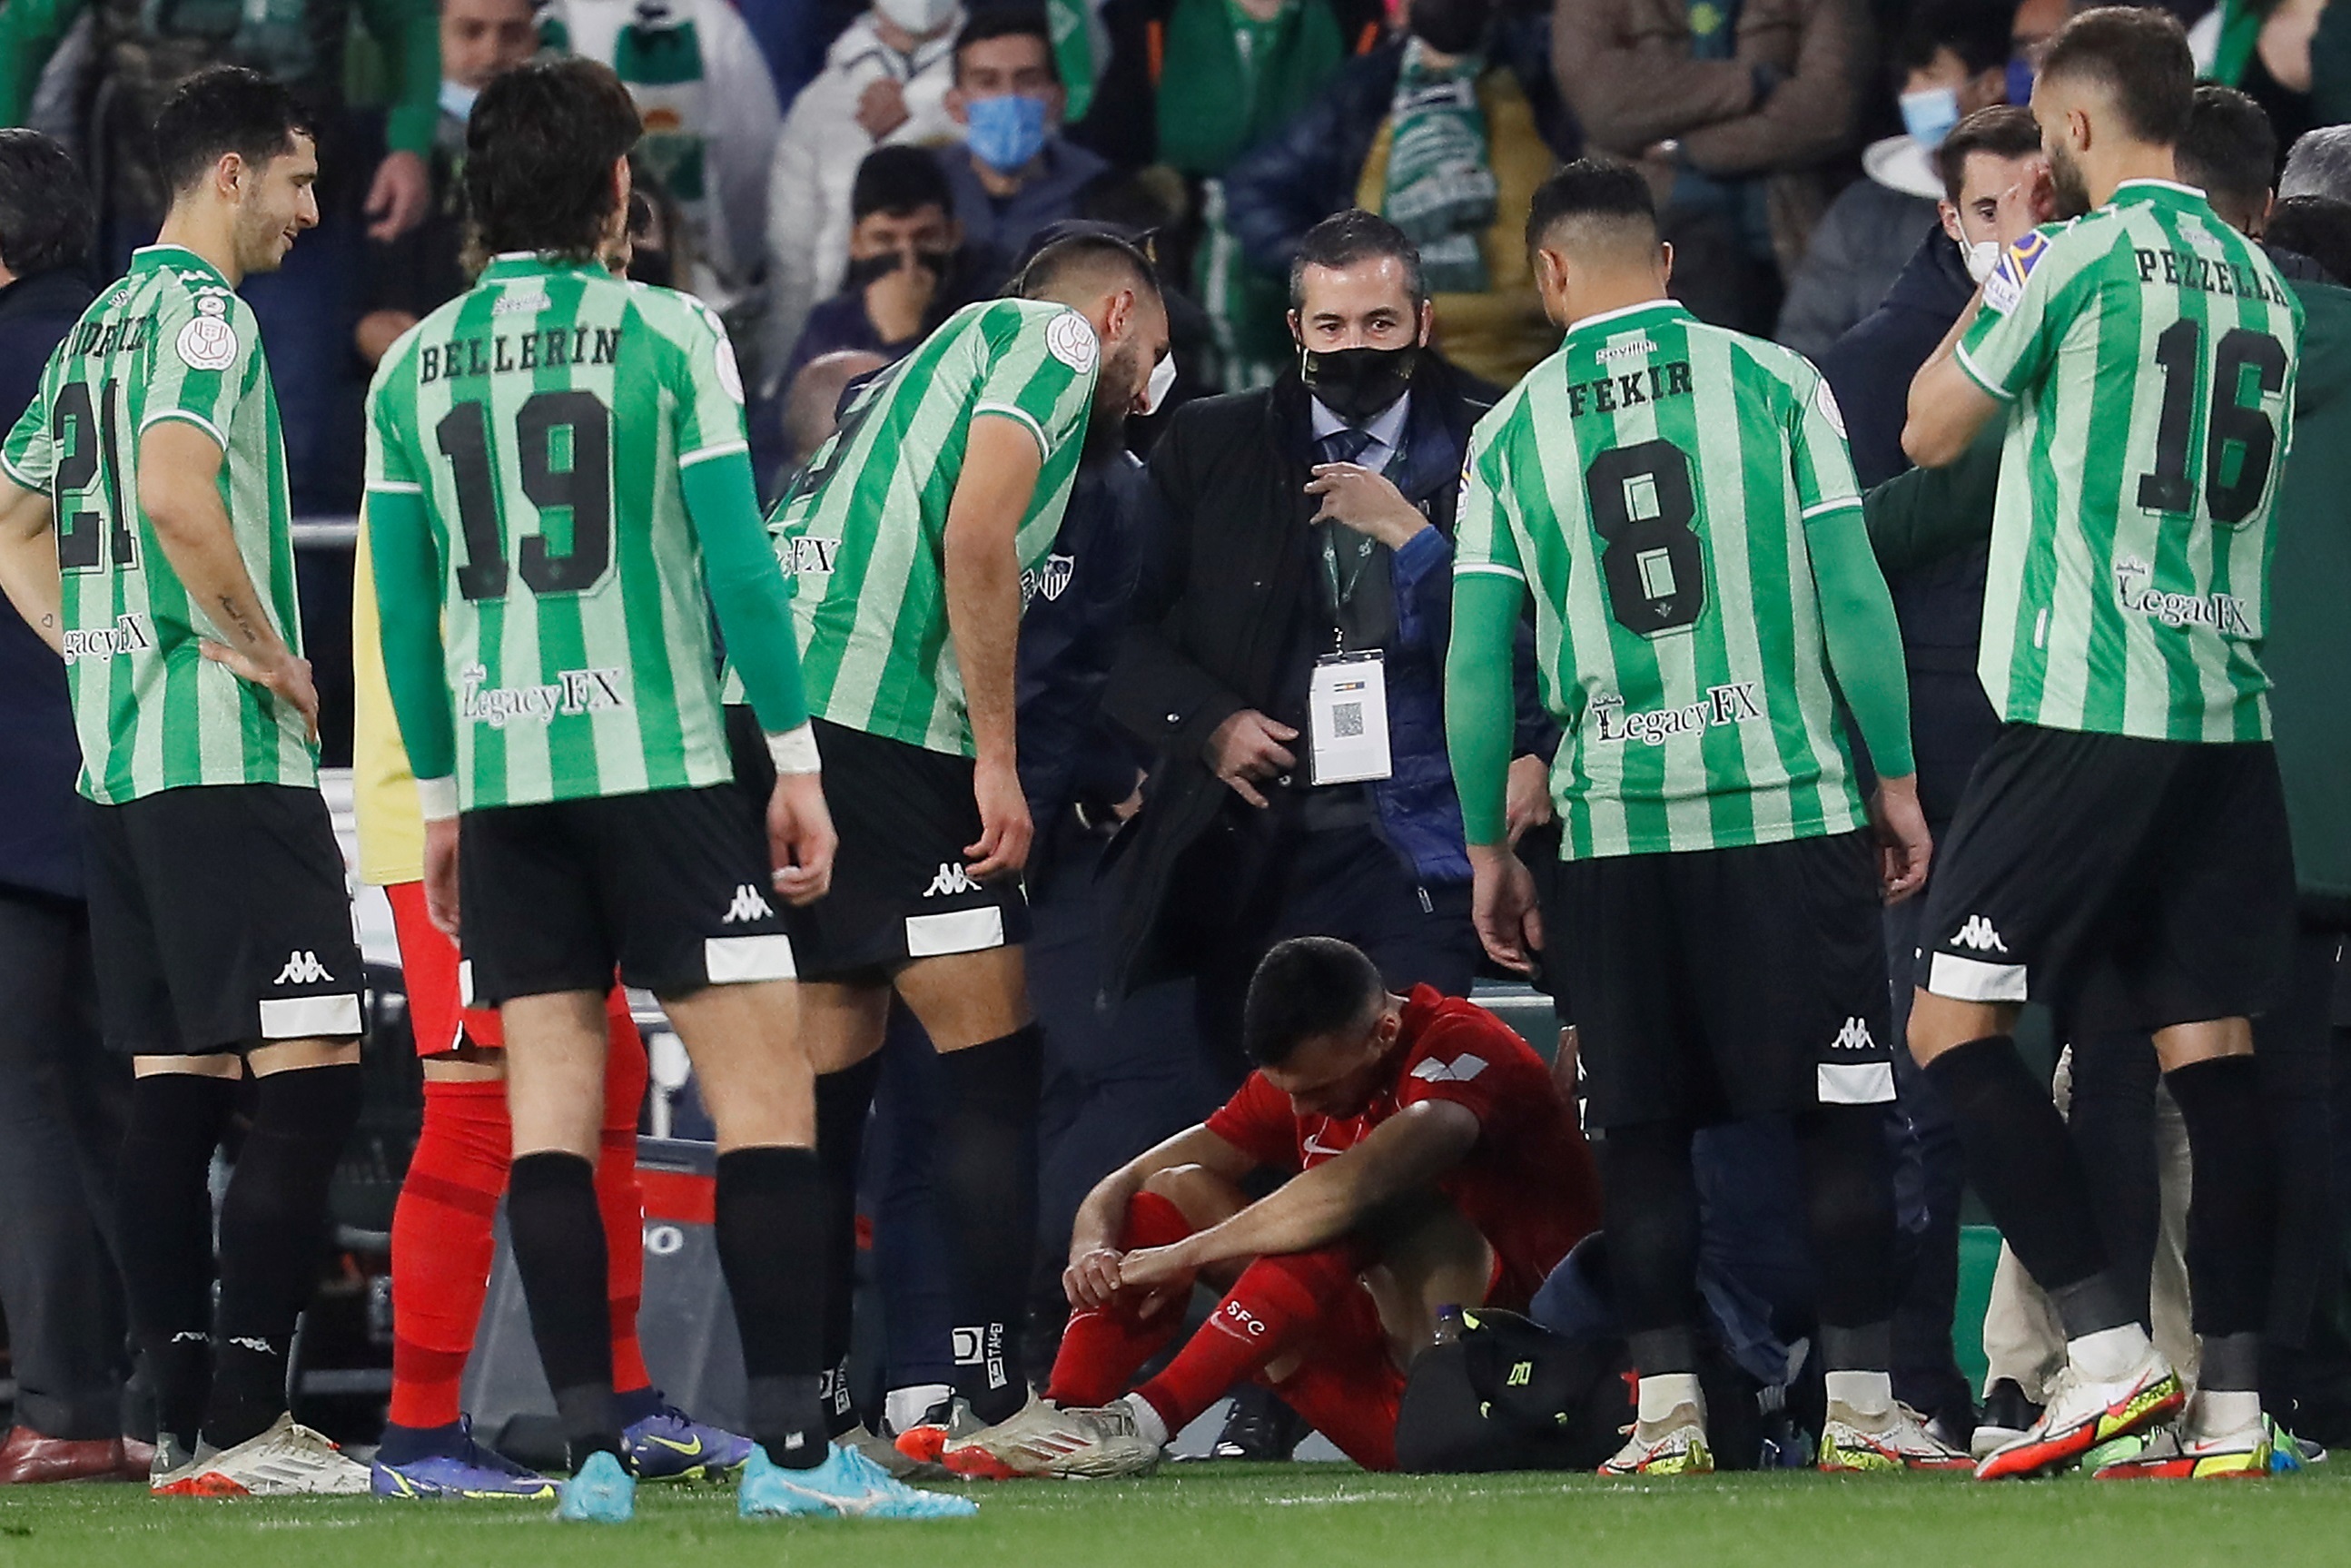 El centrocampista del Sevilla Joan Jordn tras recibir el impacto de un palo tirado desde la grada.